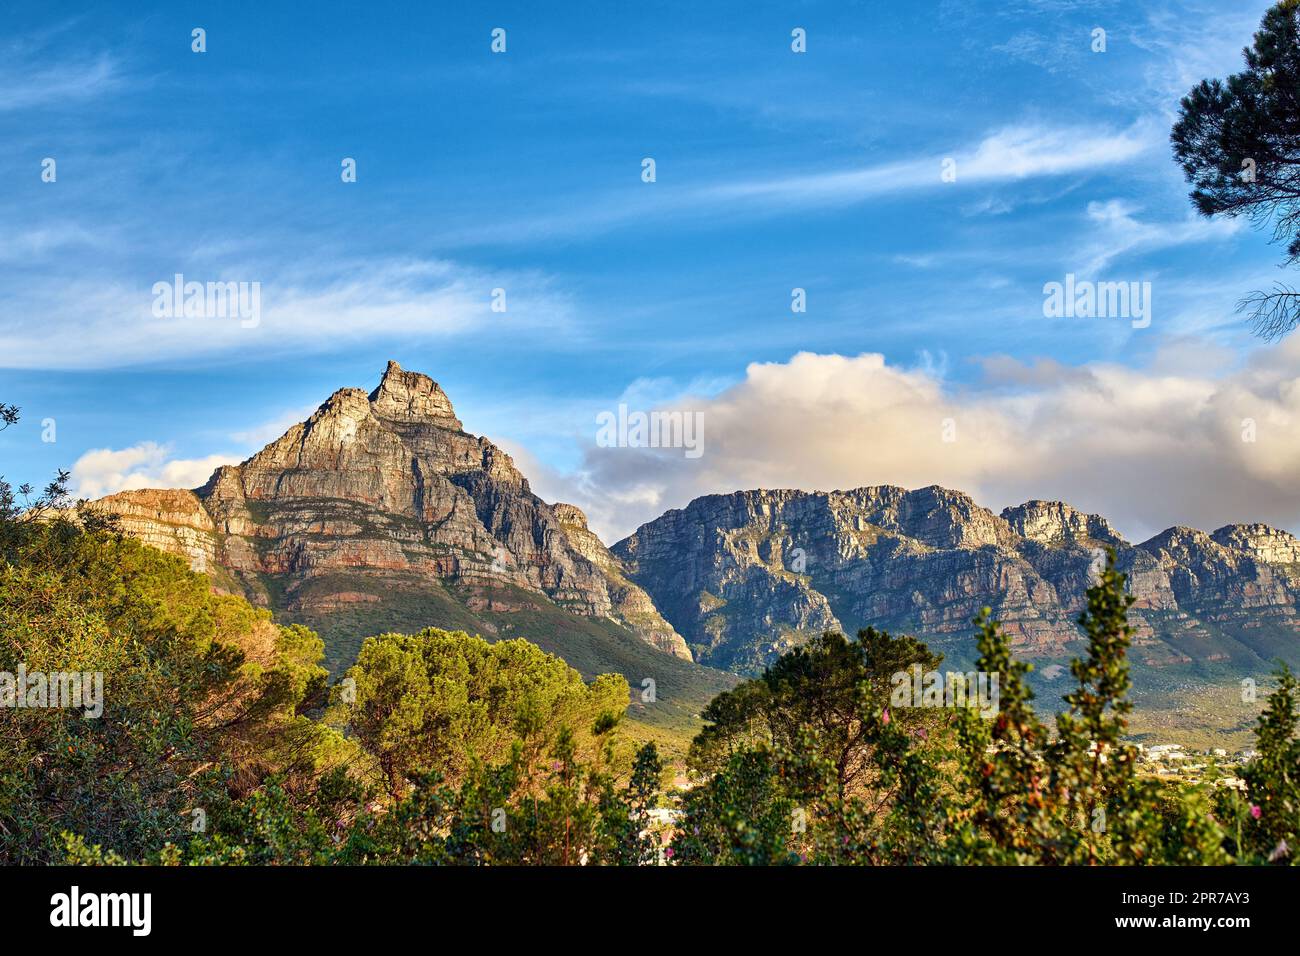 Kopieren Sie den Raum mit einer malerischen Landschaft mit bewölktem Himmel, die den Gipfel des Tafelbergs in Kapstadt an einem sonnigen Morgen von unten bedeckt. Wunderschöne Aussicht auf Pflanzen und Bäume rund um ein berühmtes Naturdenkmal Stockfoto